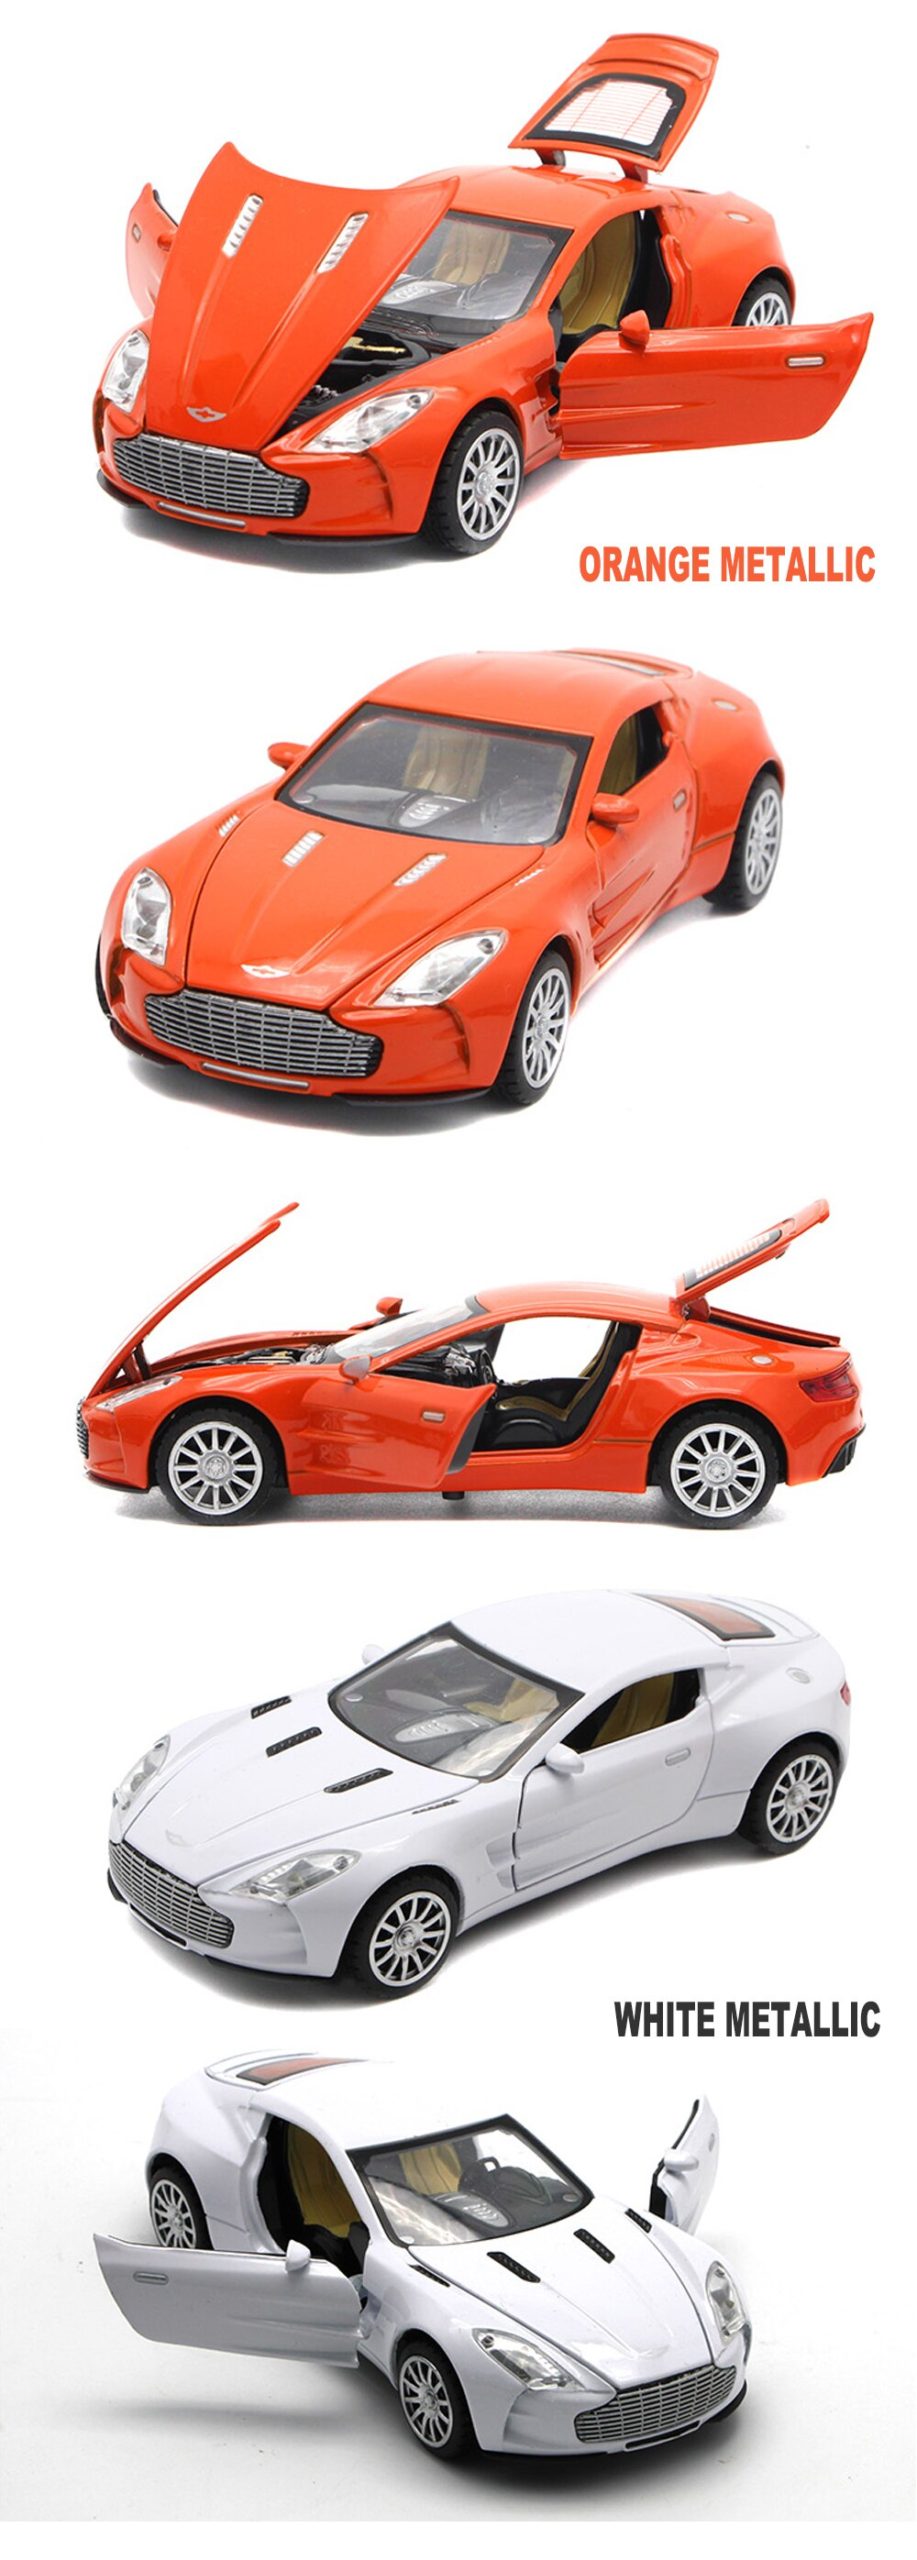 Aston Martin One-77 coches de juguete de Metal, 1/32 modelo de escala fundida, regalo para niños con función de extracción trasera/música/luz/puerta de apertura